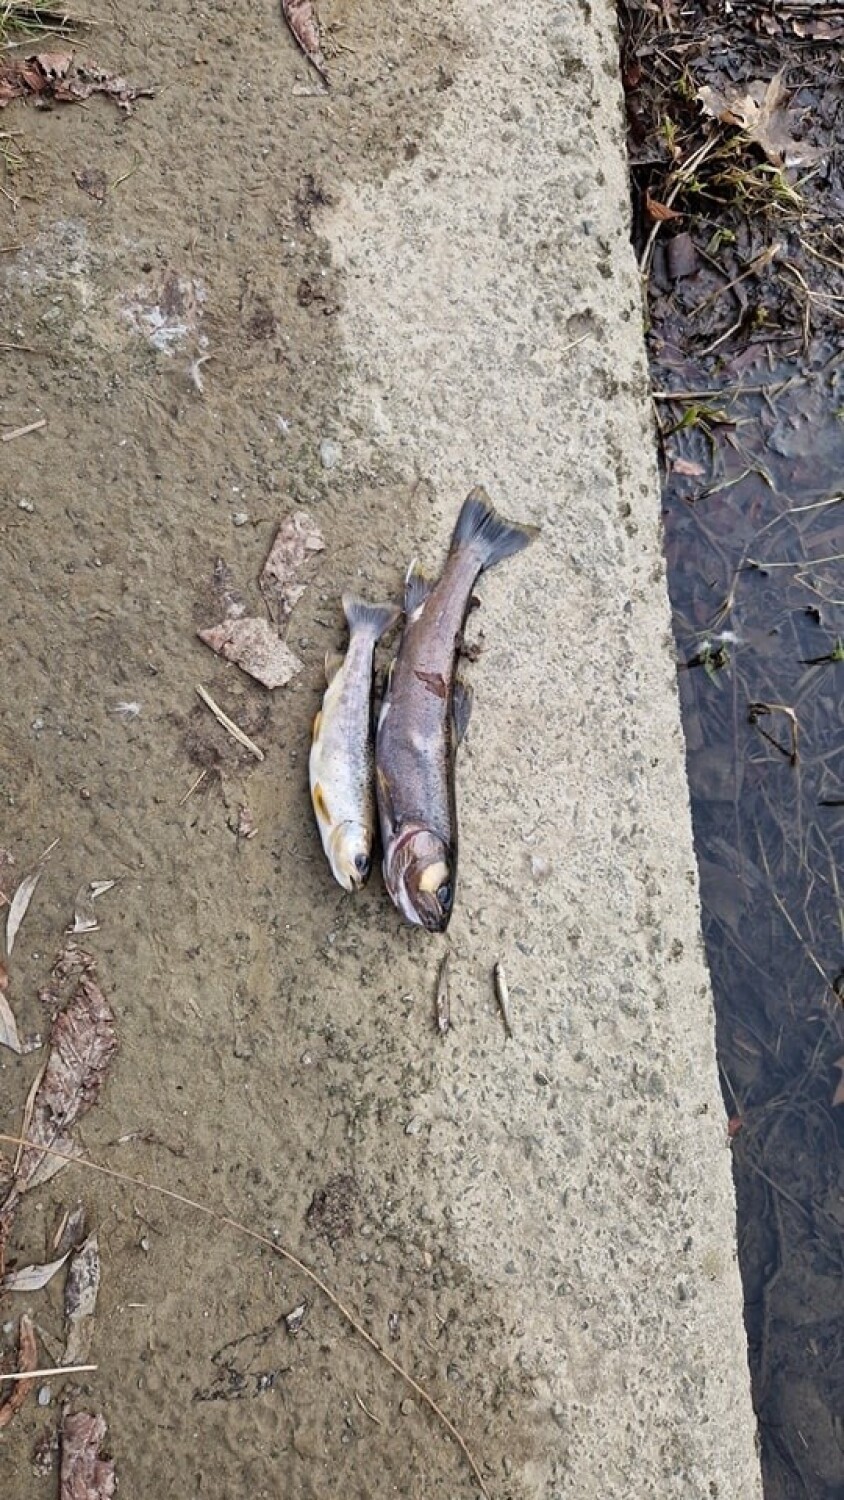 Śnięte ryby w rzece w Bielsku-Białej! Zanieczyszczenia i nienaruralny kolor wody. To przez wyciek amoniaku? Próbki już pobrane